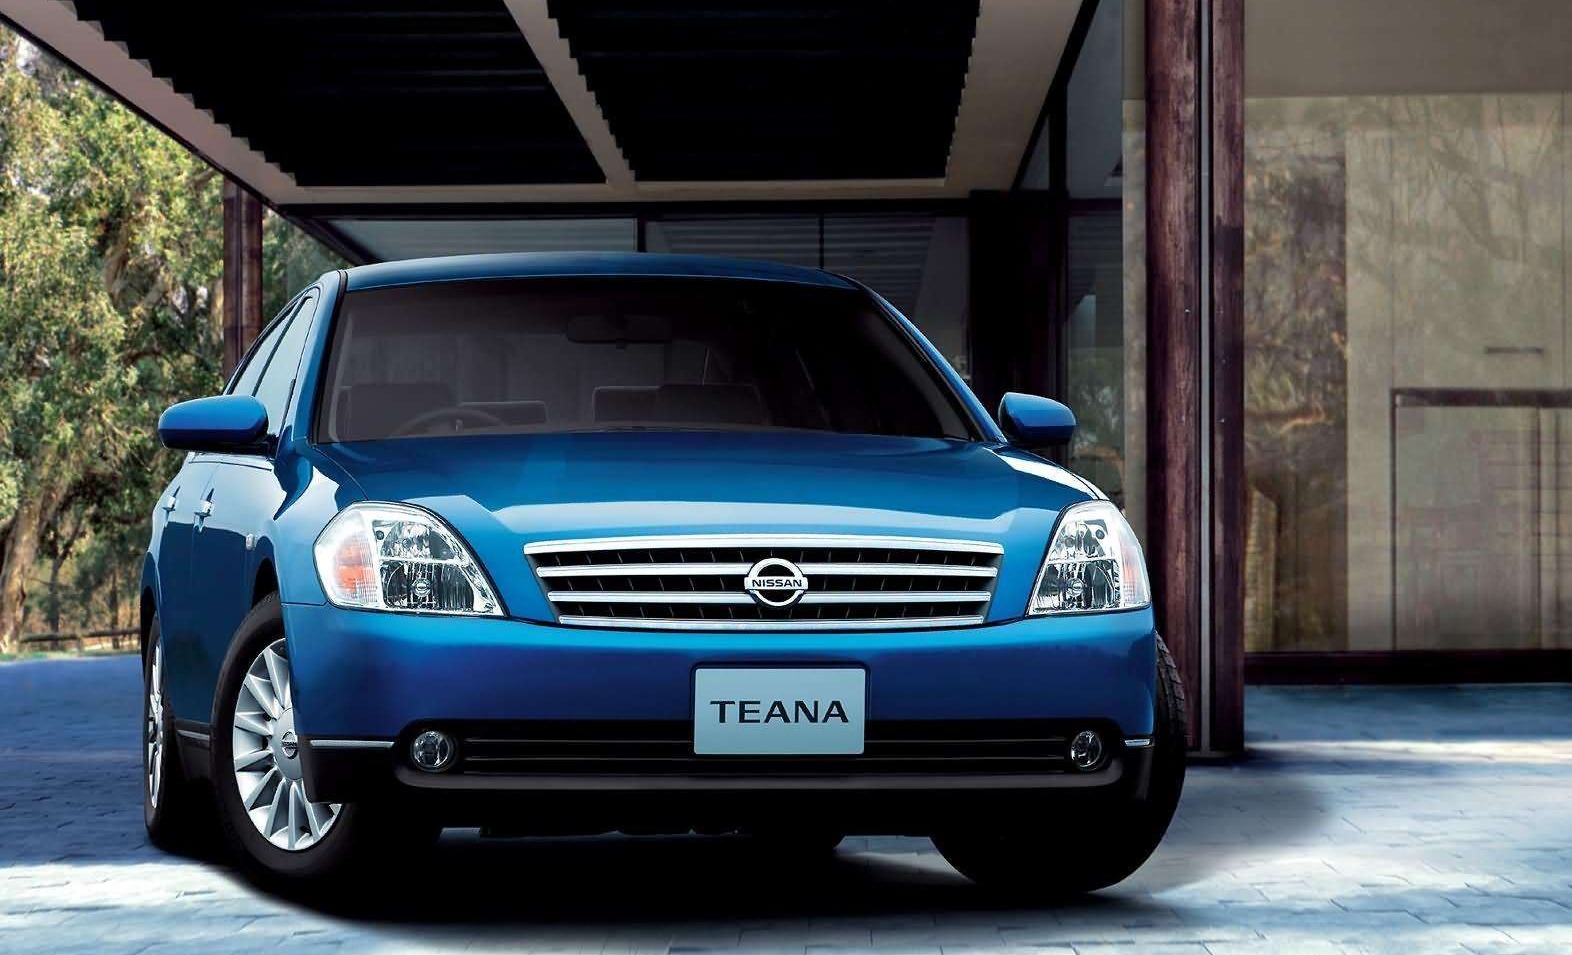 Autobatterie für Nissan Teana günstig bestellen